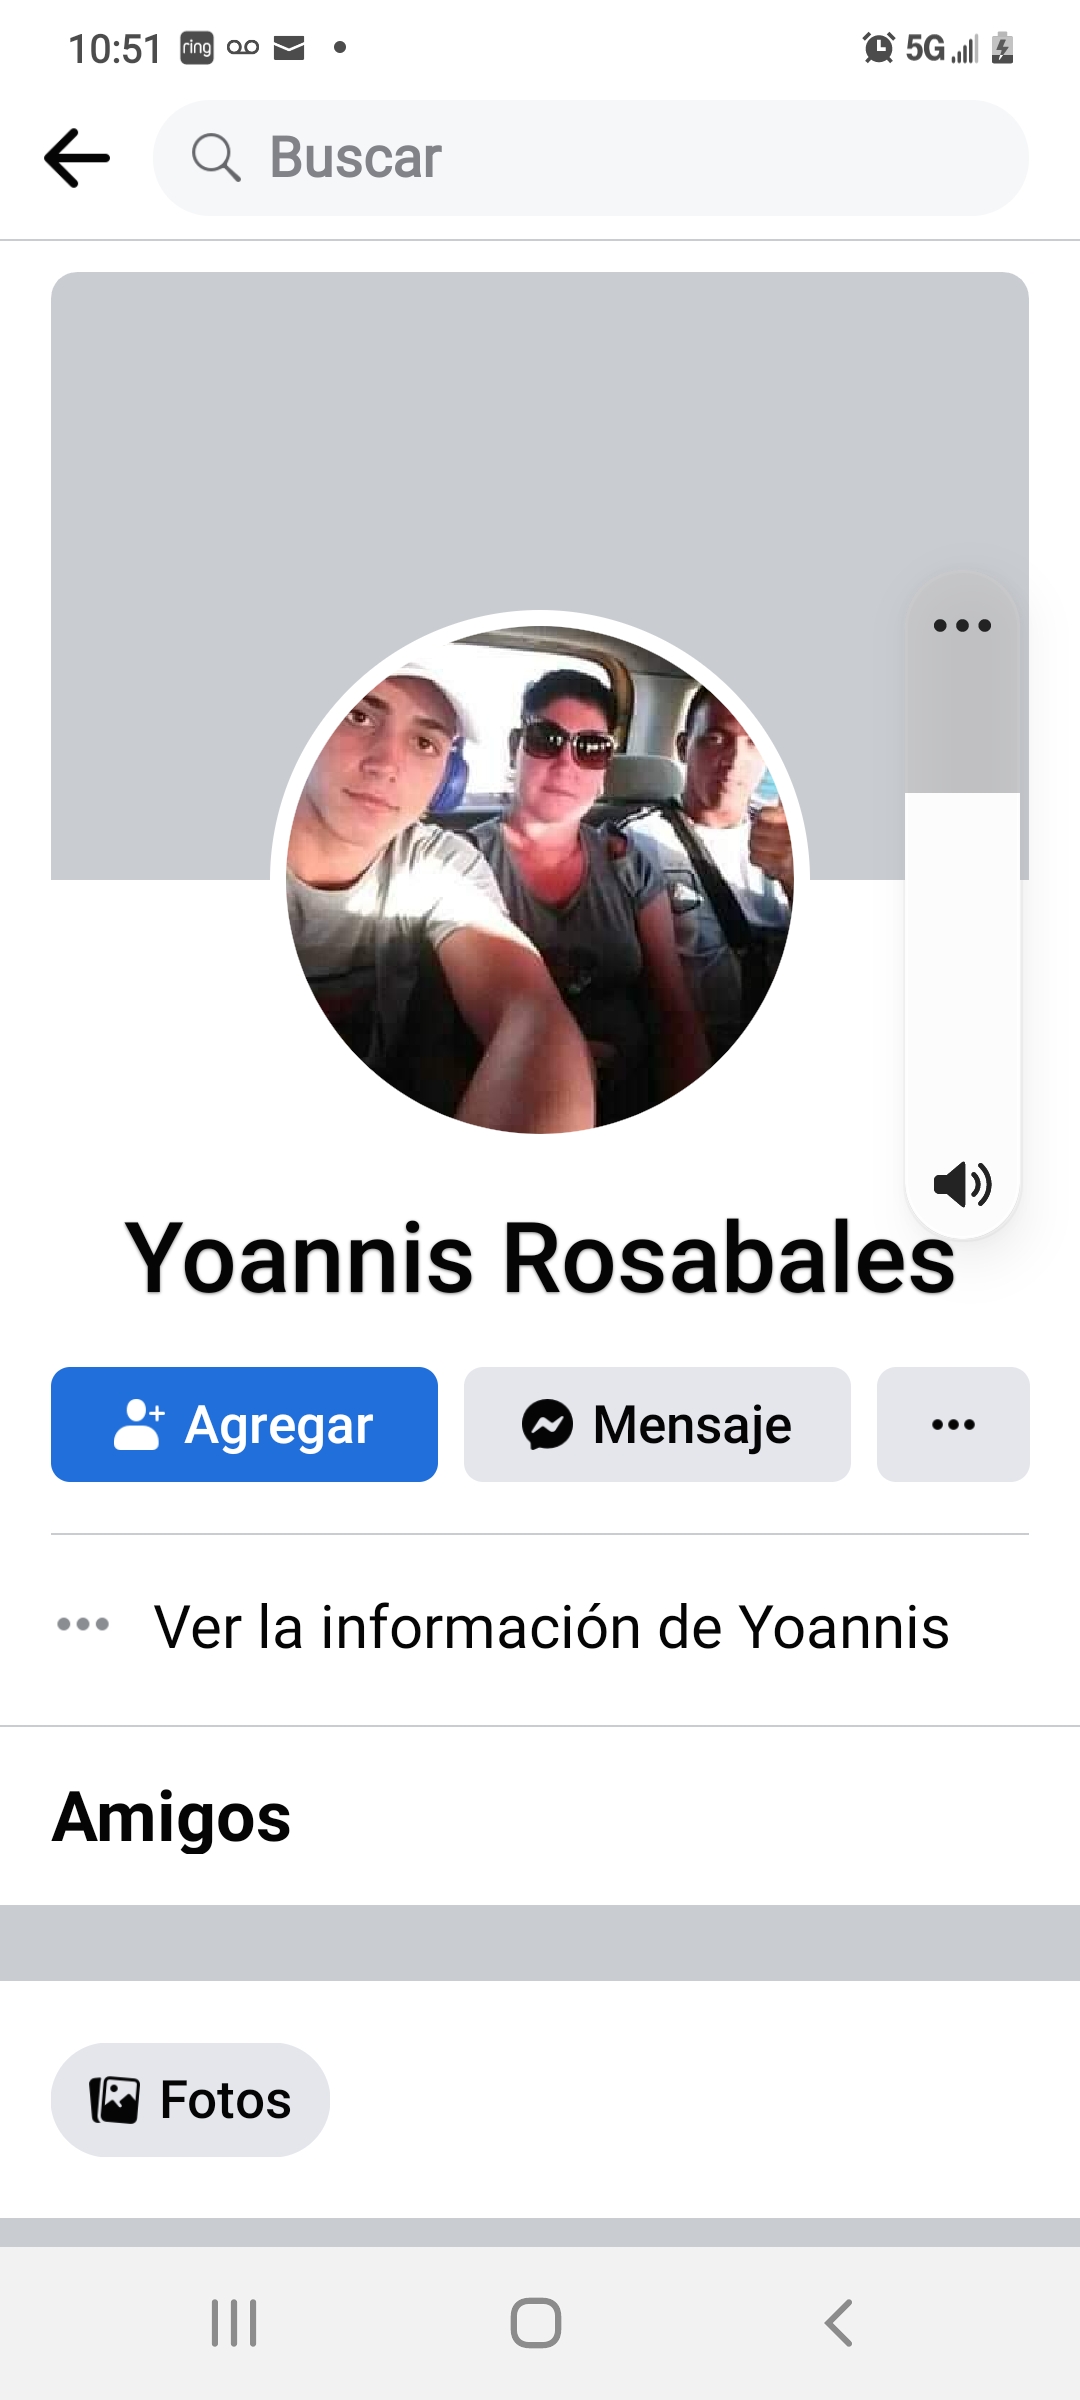 Yoannis Rosabales